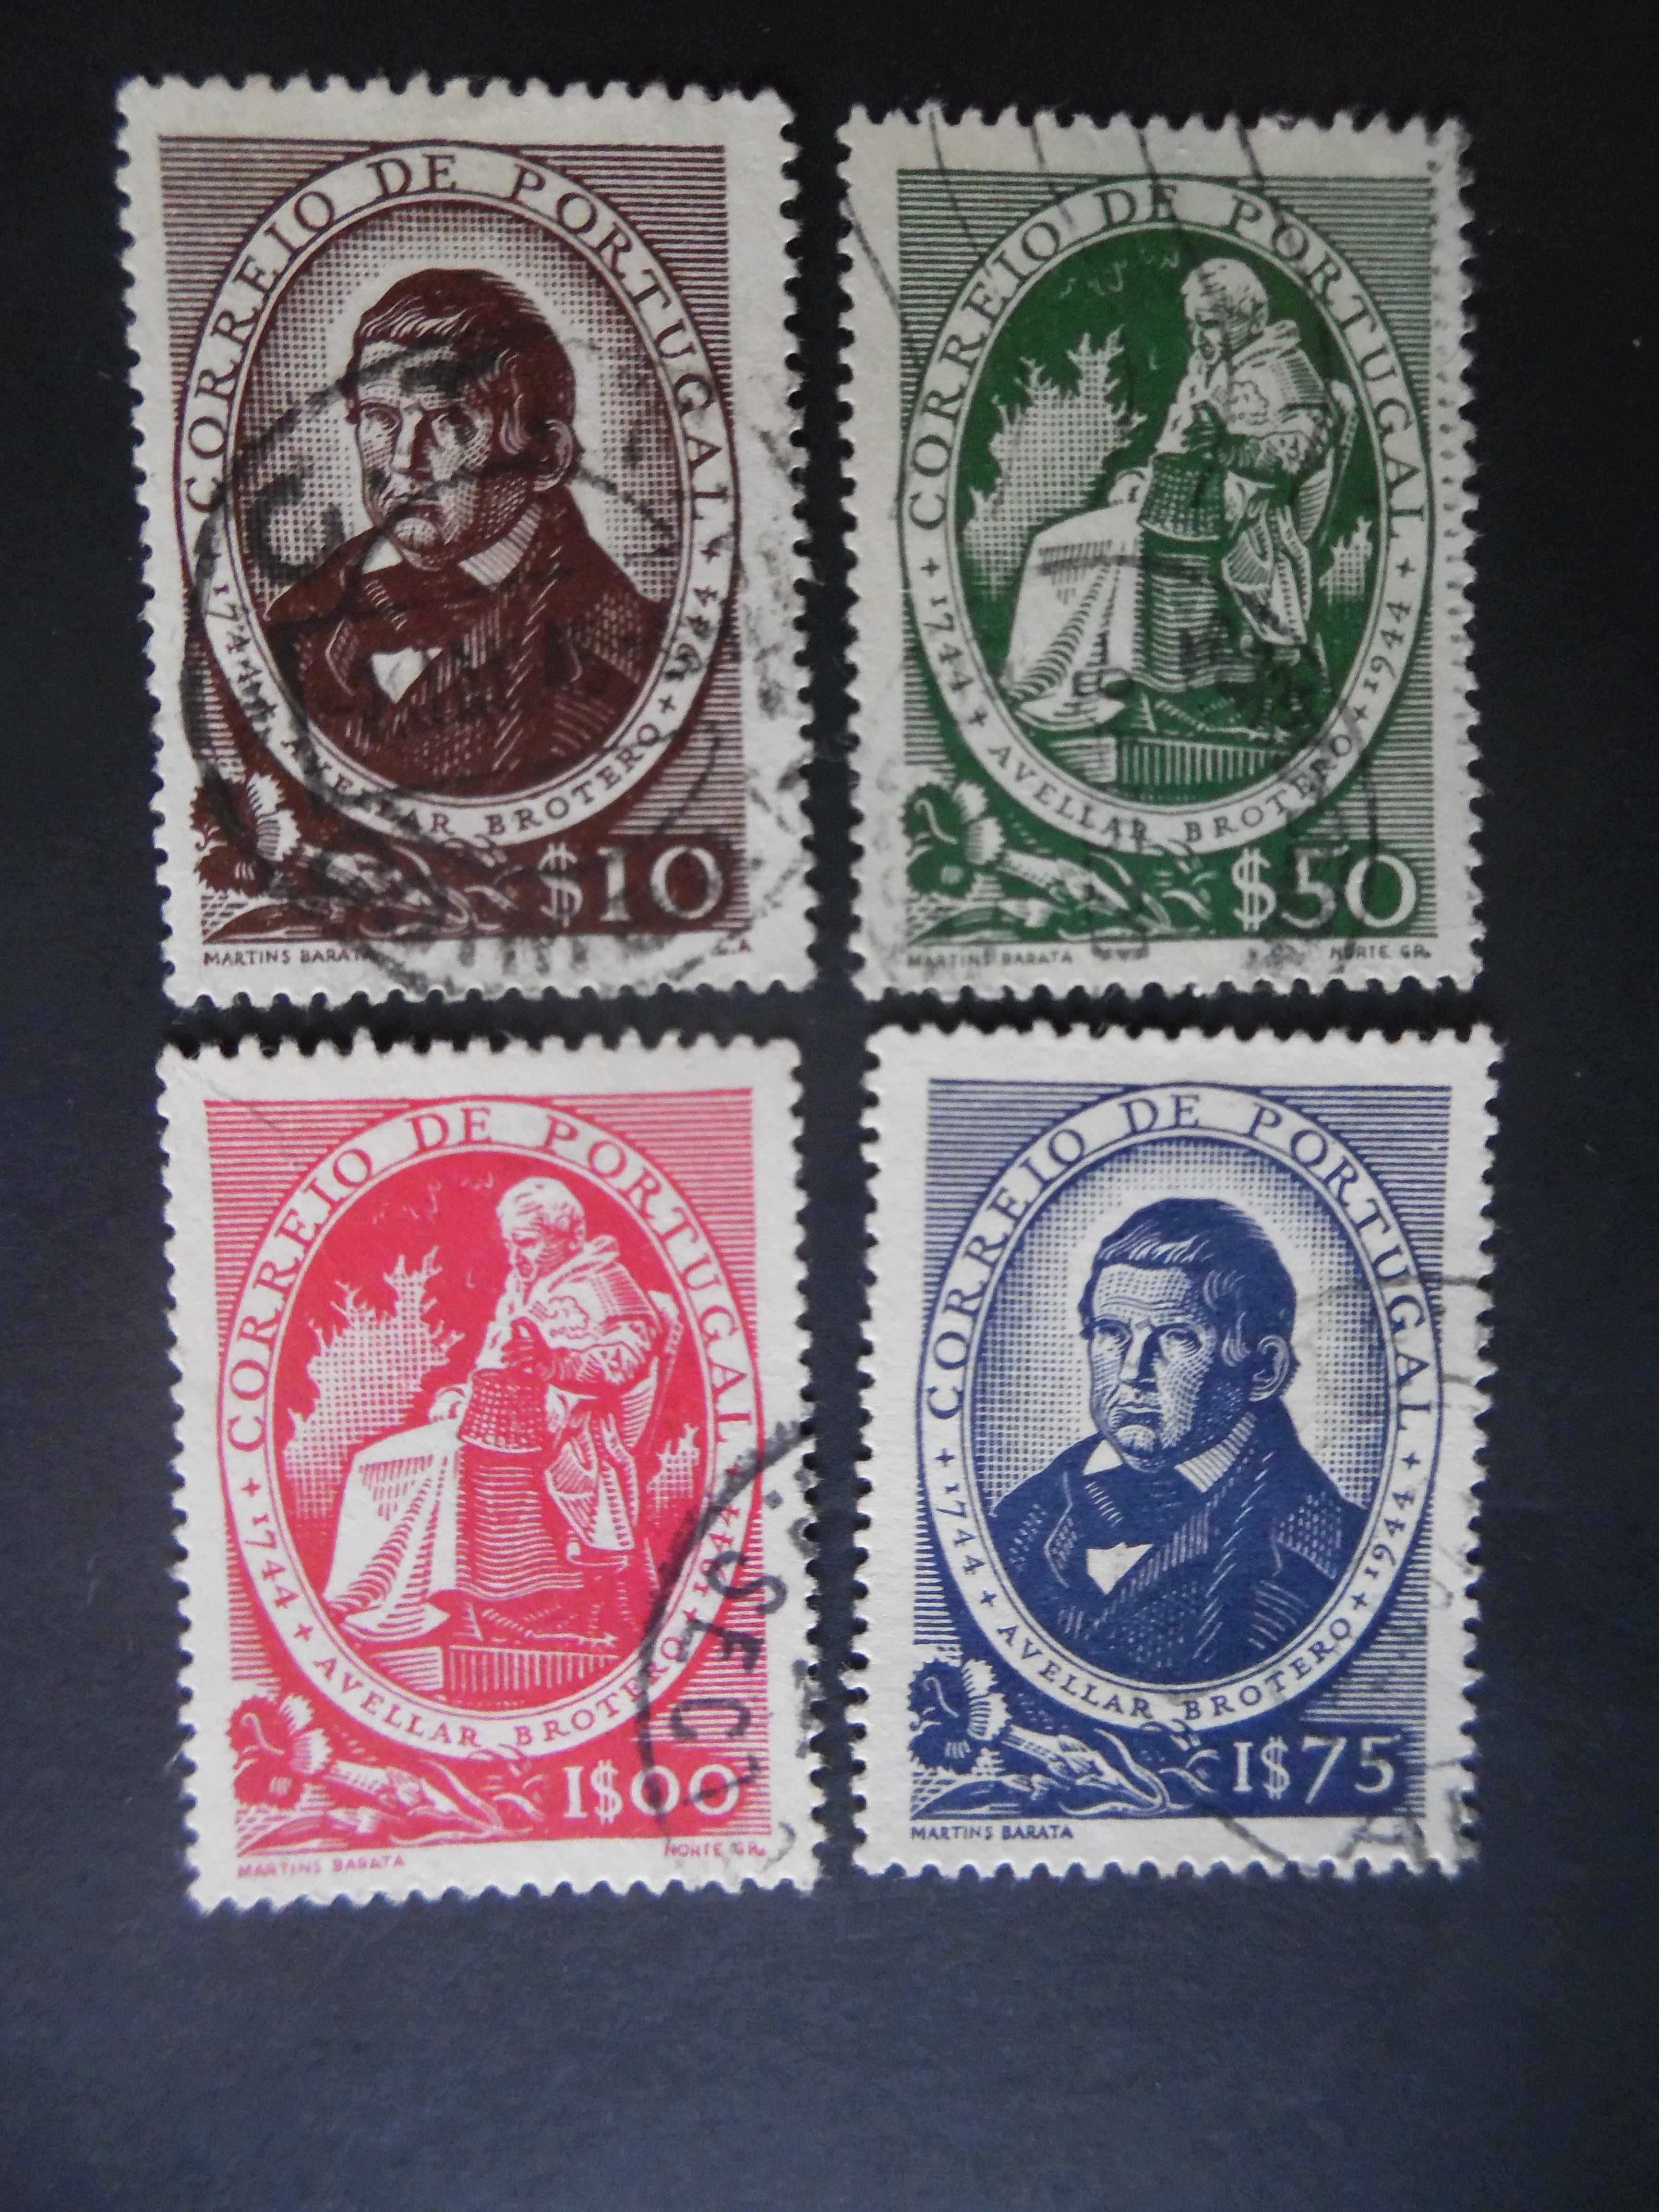 Selos Portugal-1944 Avelar Brotero Coleção Completa